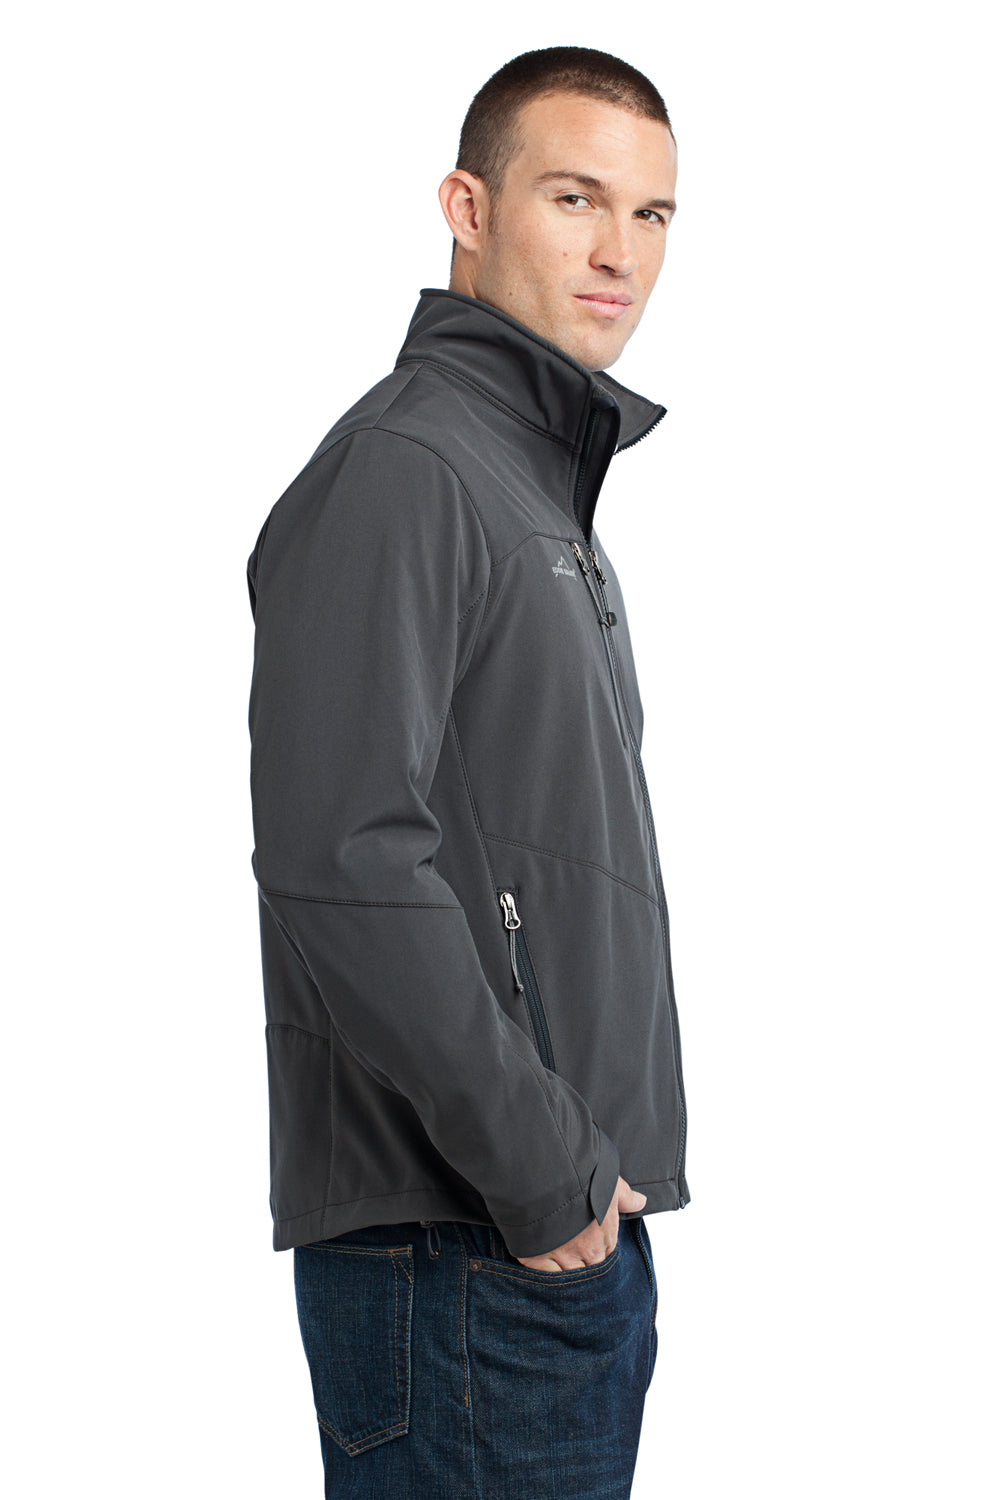 Eddie Bauer EB530 Mens Water Resistant Full Zip Jacket Steel Grey Model Side